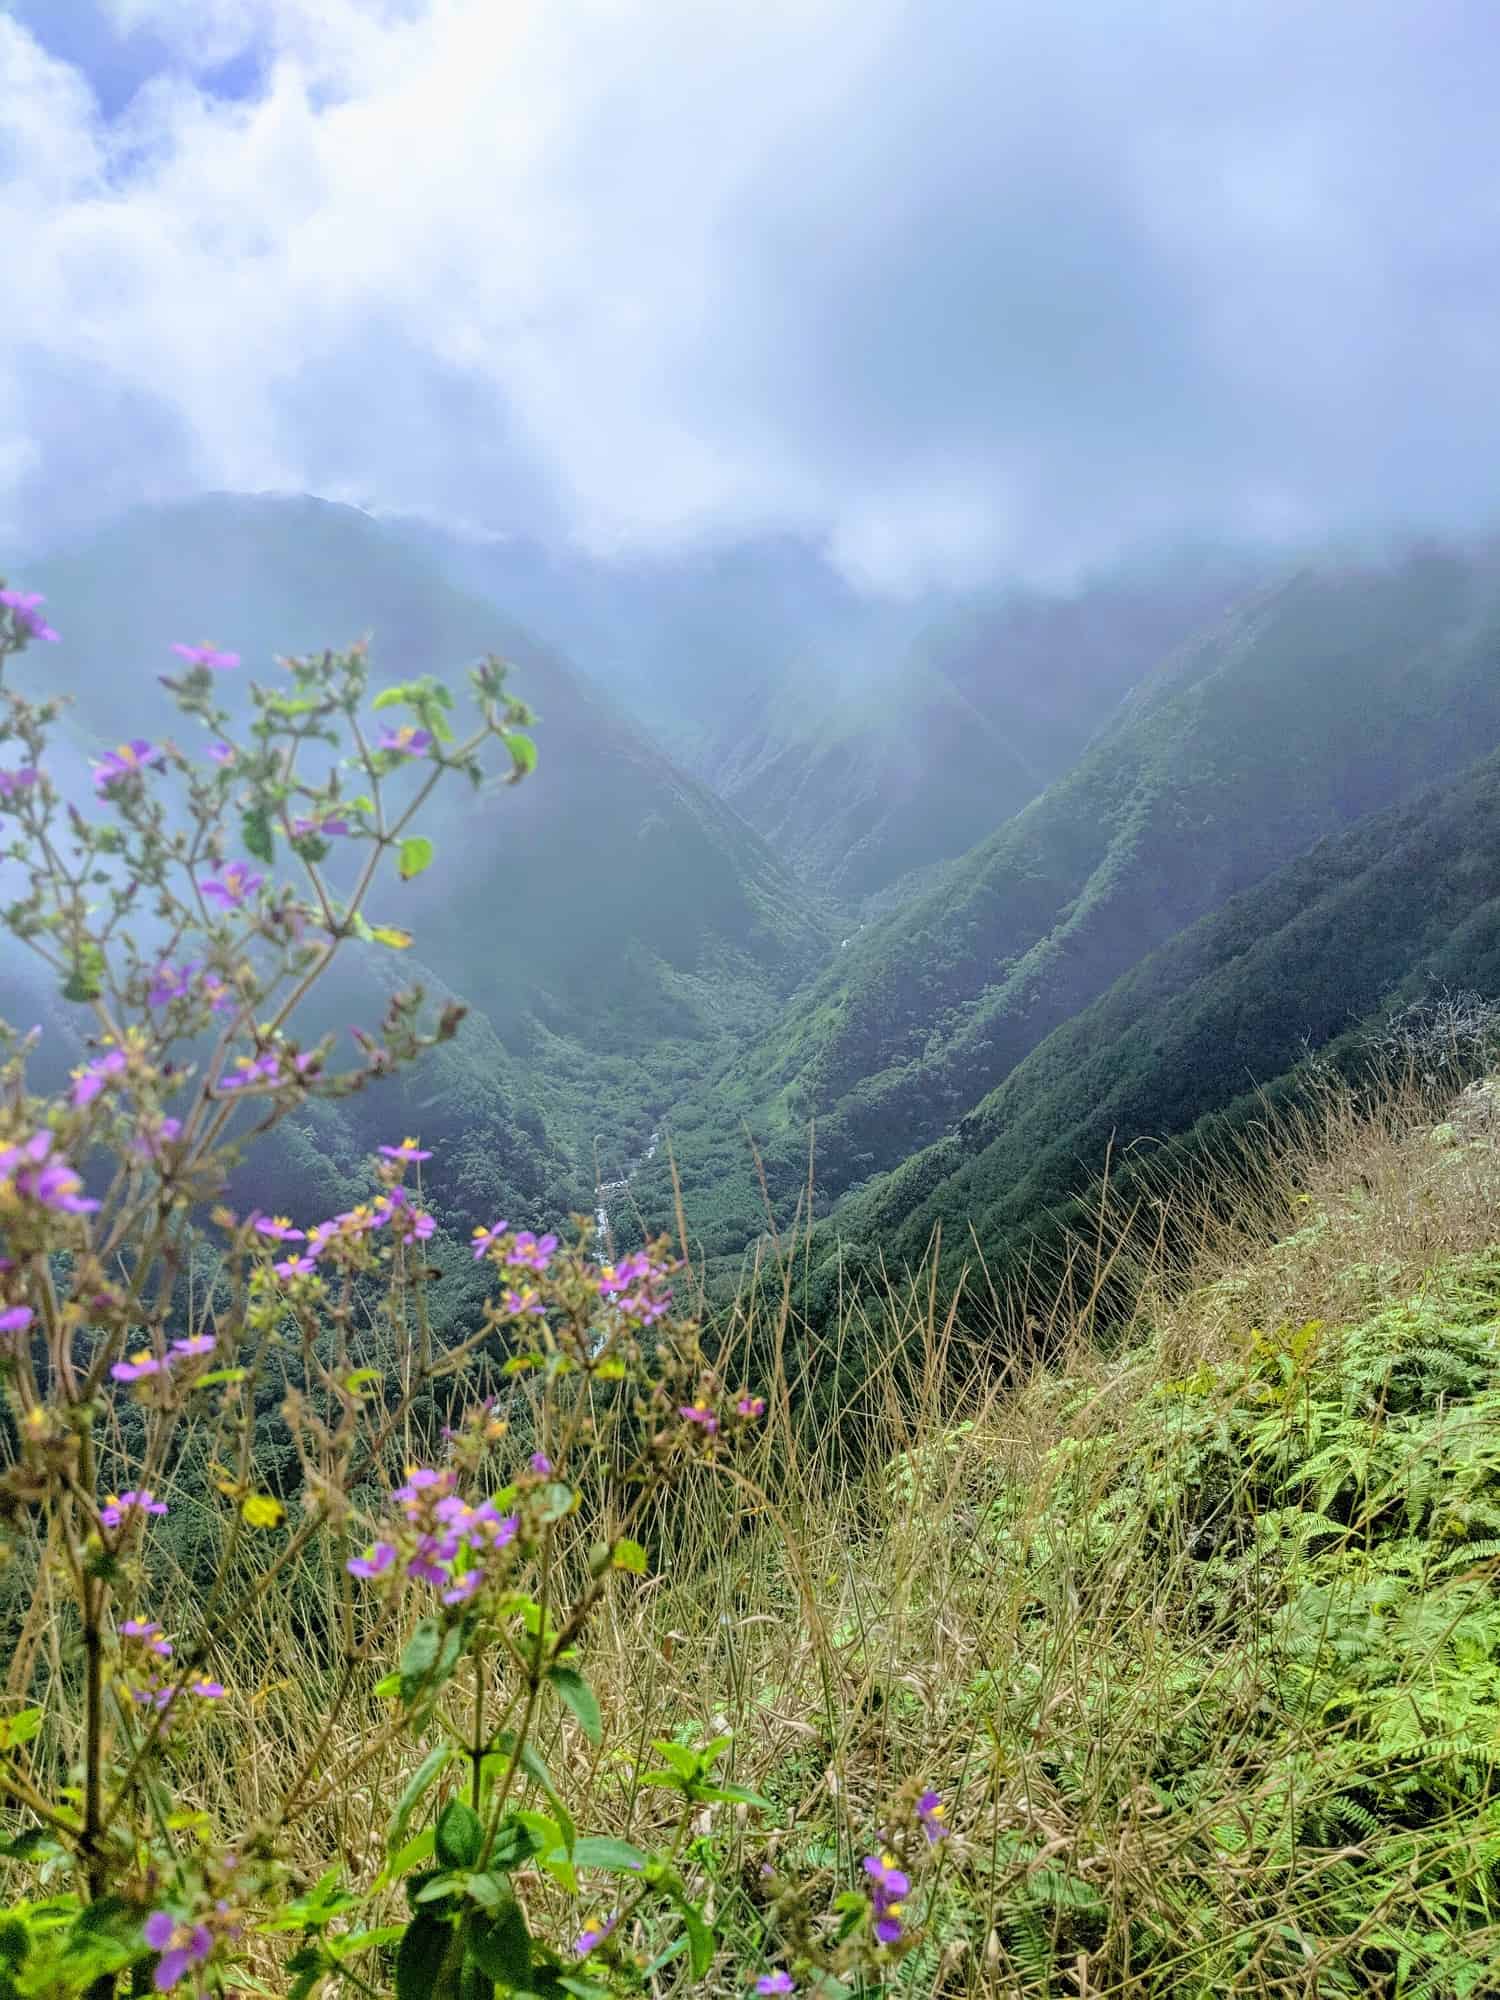 Maui hiking Waihee Ridge Trail